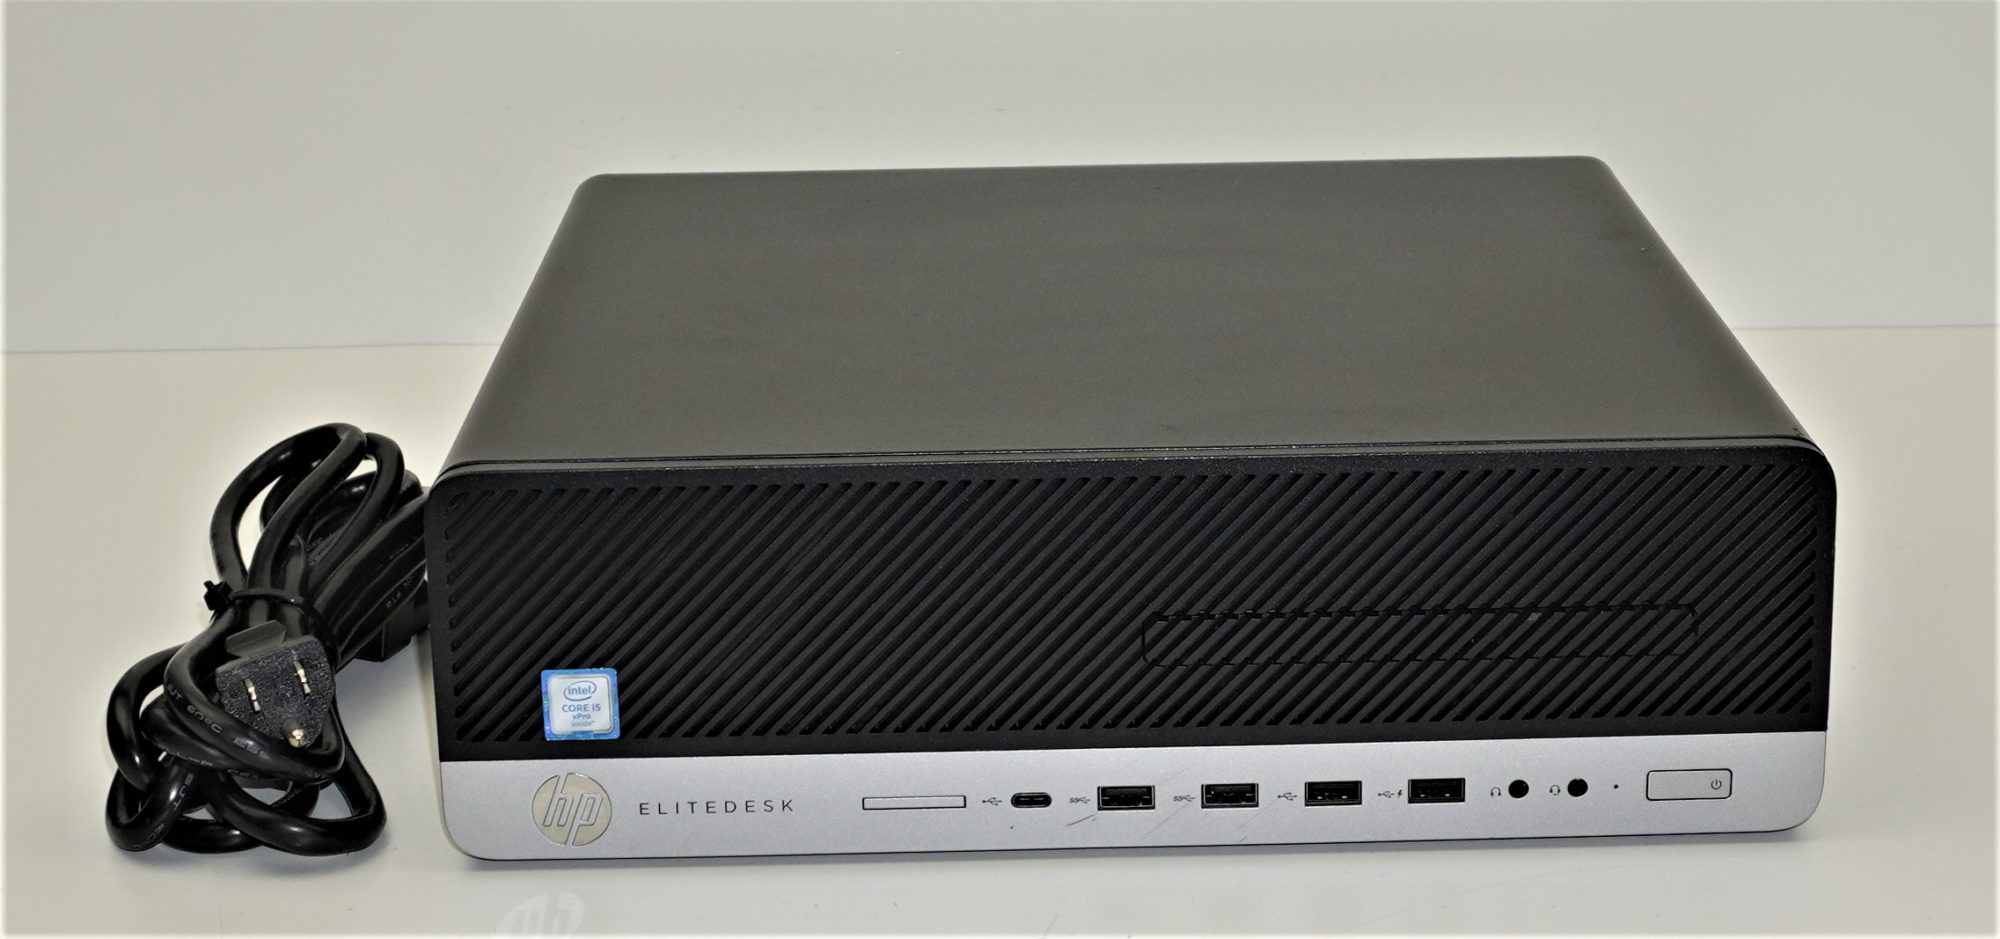 HP EliteDesk 800 G3 SFF | i5-6500 @ 3.2GHz | 8GB DDR4 | 256GB M.2 NVMe SSD  | Windows 10 Professional